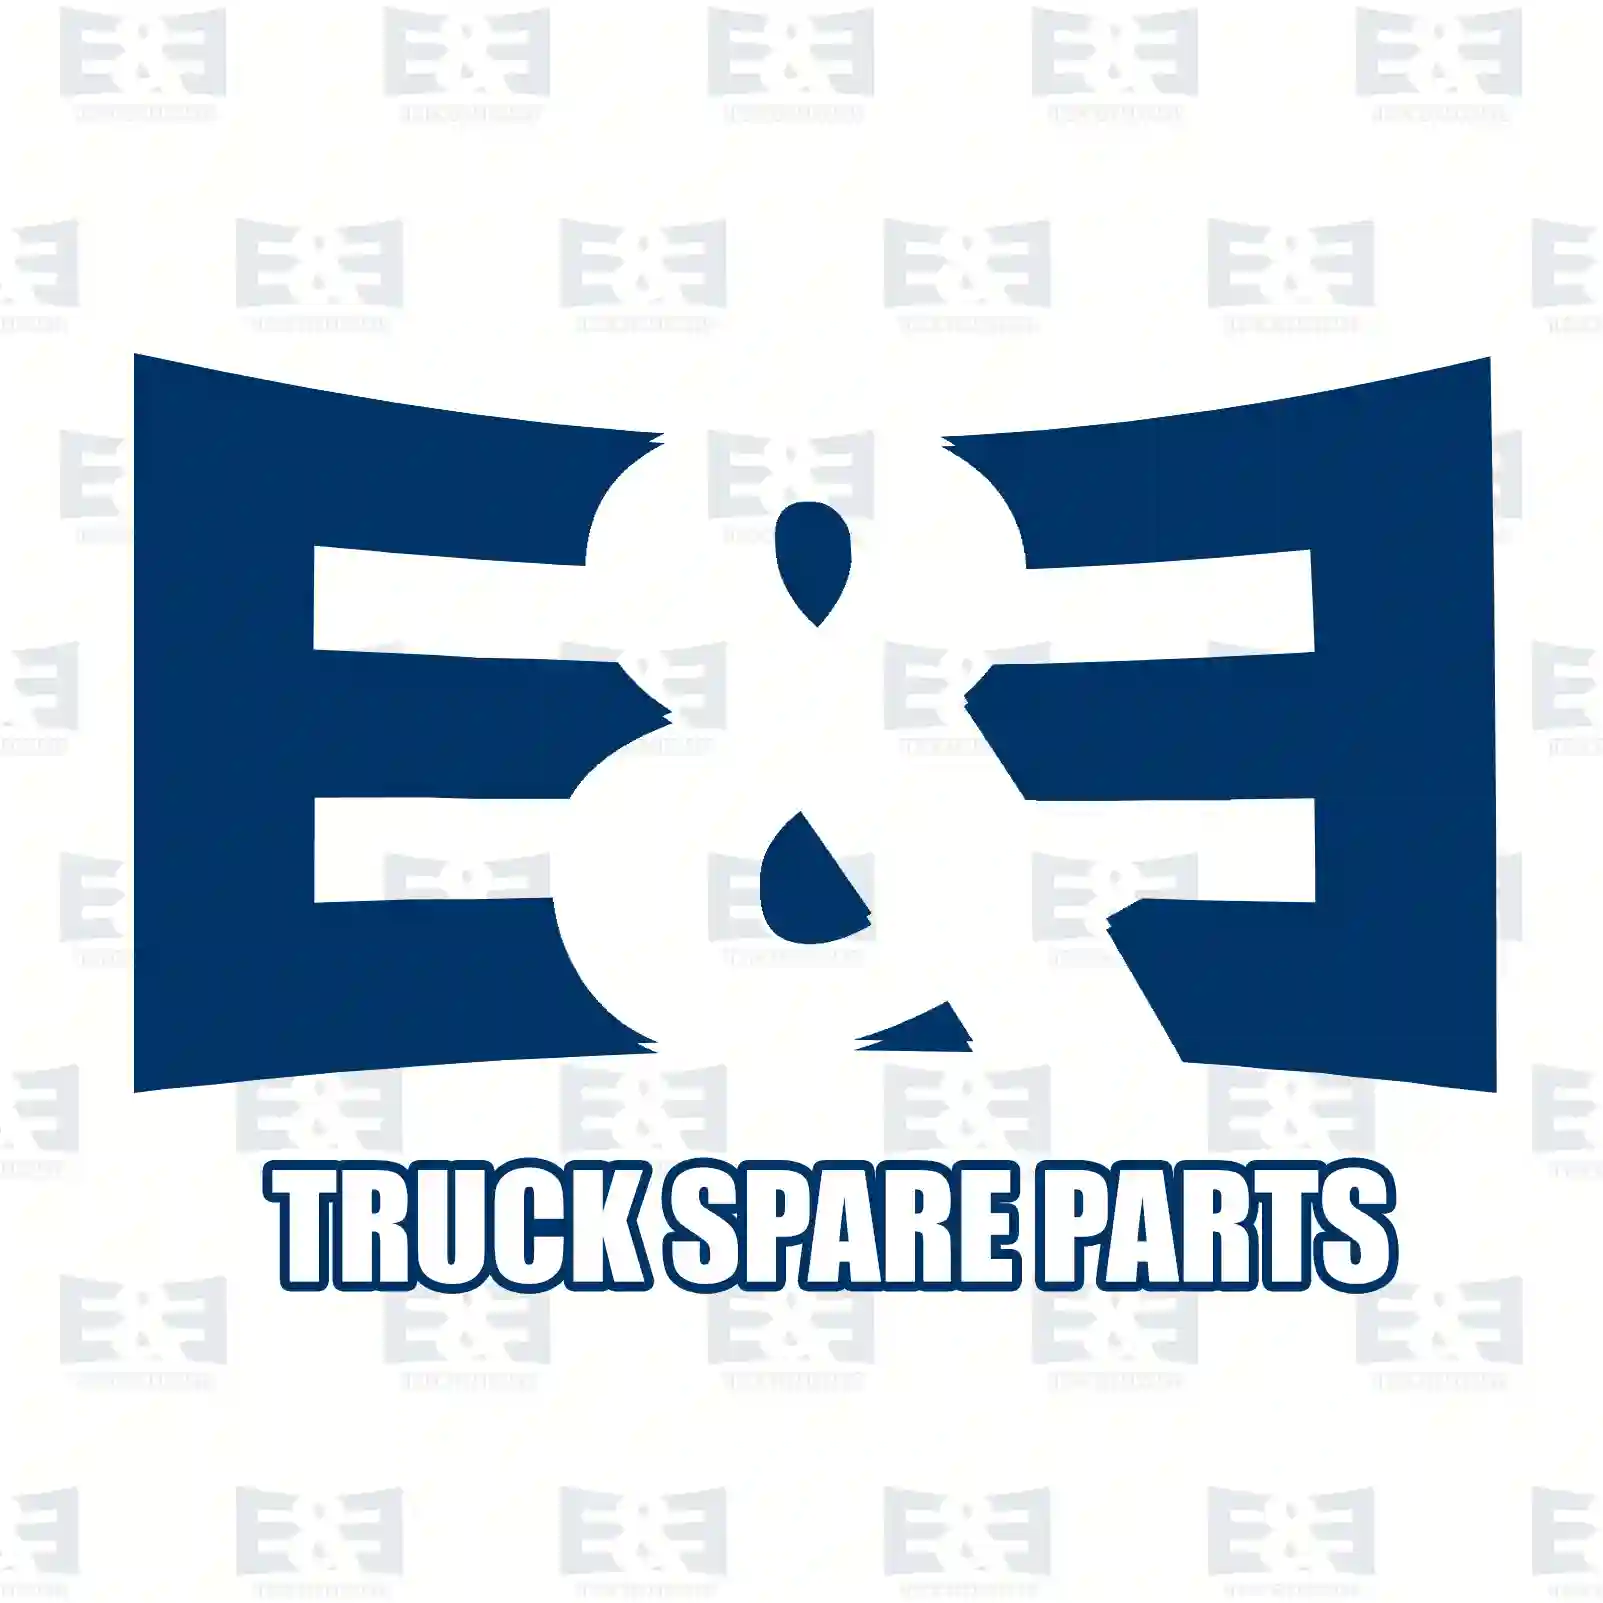 Field winding, 2E2299136, 1337451, 1397424, 0001519655 ||  2E2299136 E&E Truck Spare Parts | Truck Spare Parts, Auotomotive Spare Parts Field winding, 2E2299136, 1337451, 1397424, 0001519655 ||  2E2299136 E&E Truck Spare Parts | Truck Spare Parts, Auotomotive Spare Parts